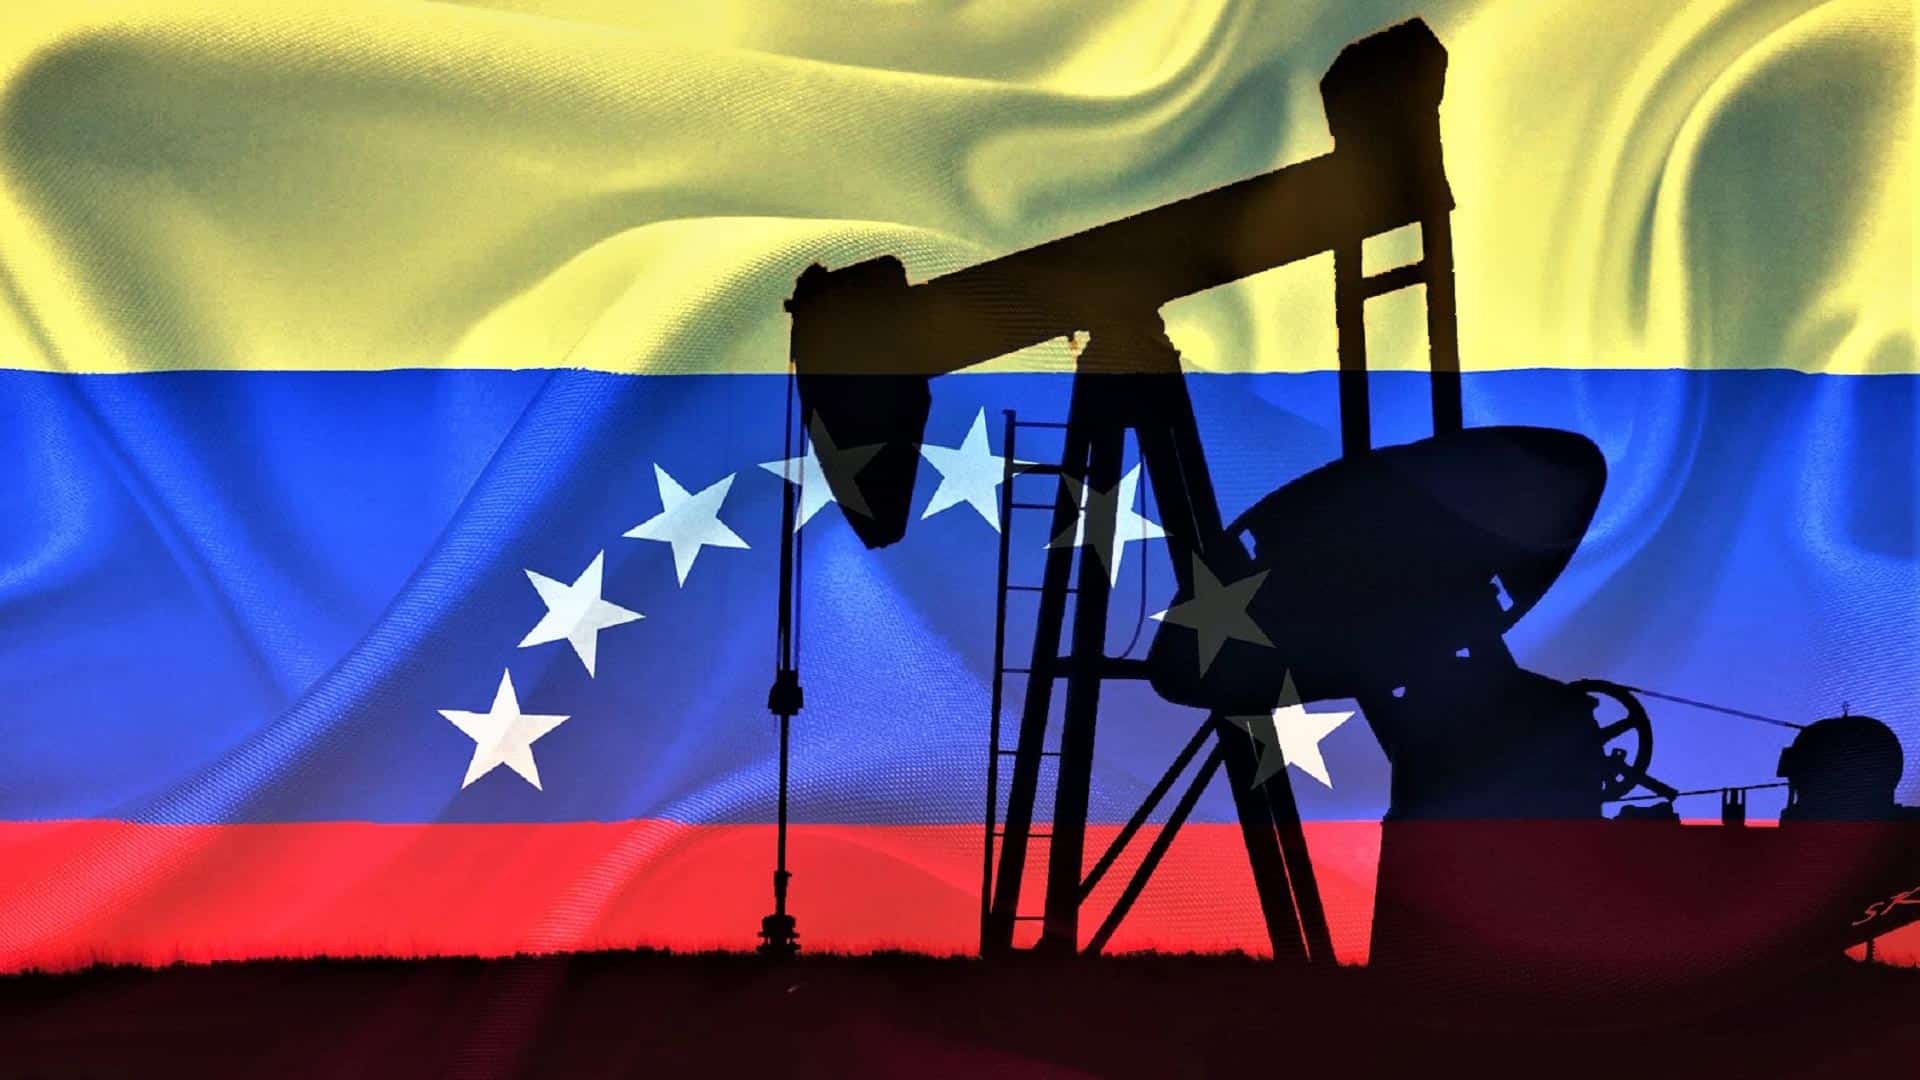 μεταφορά πετρελαίου από την Βενεζουέλα